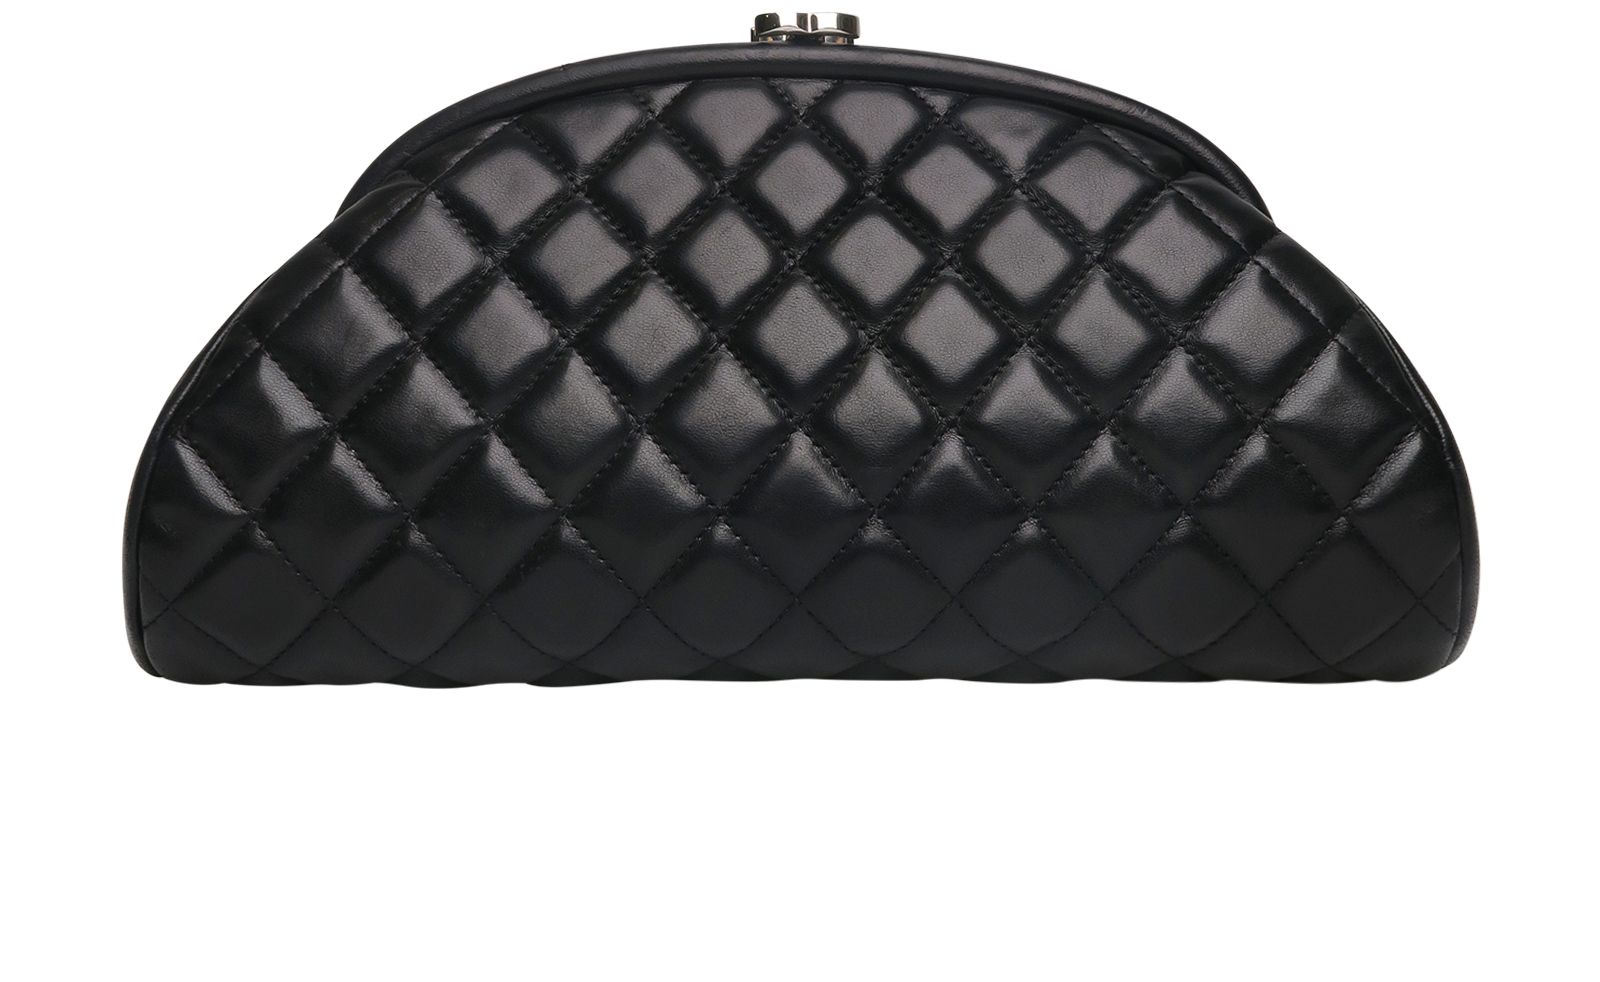 Black Chanel Quilted Evening Bag – Designer Revival